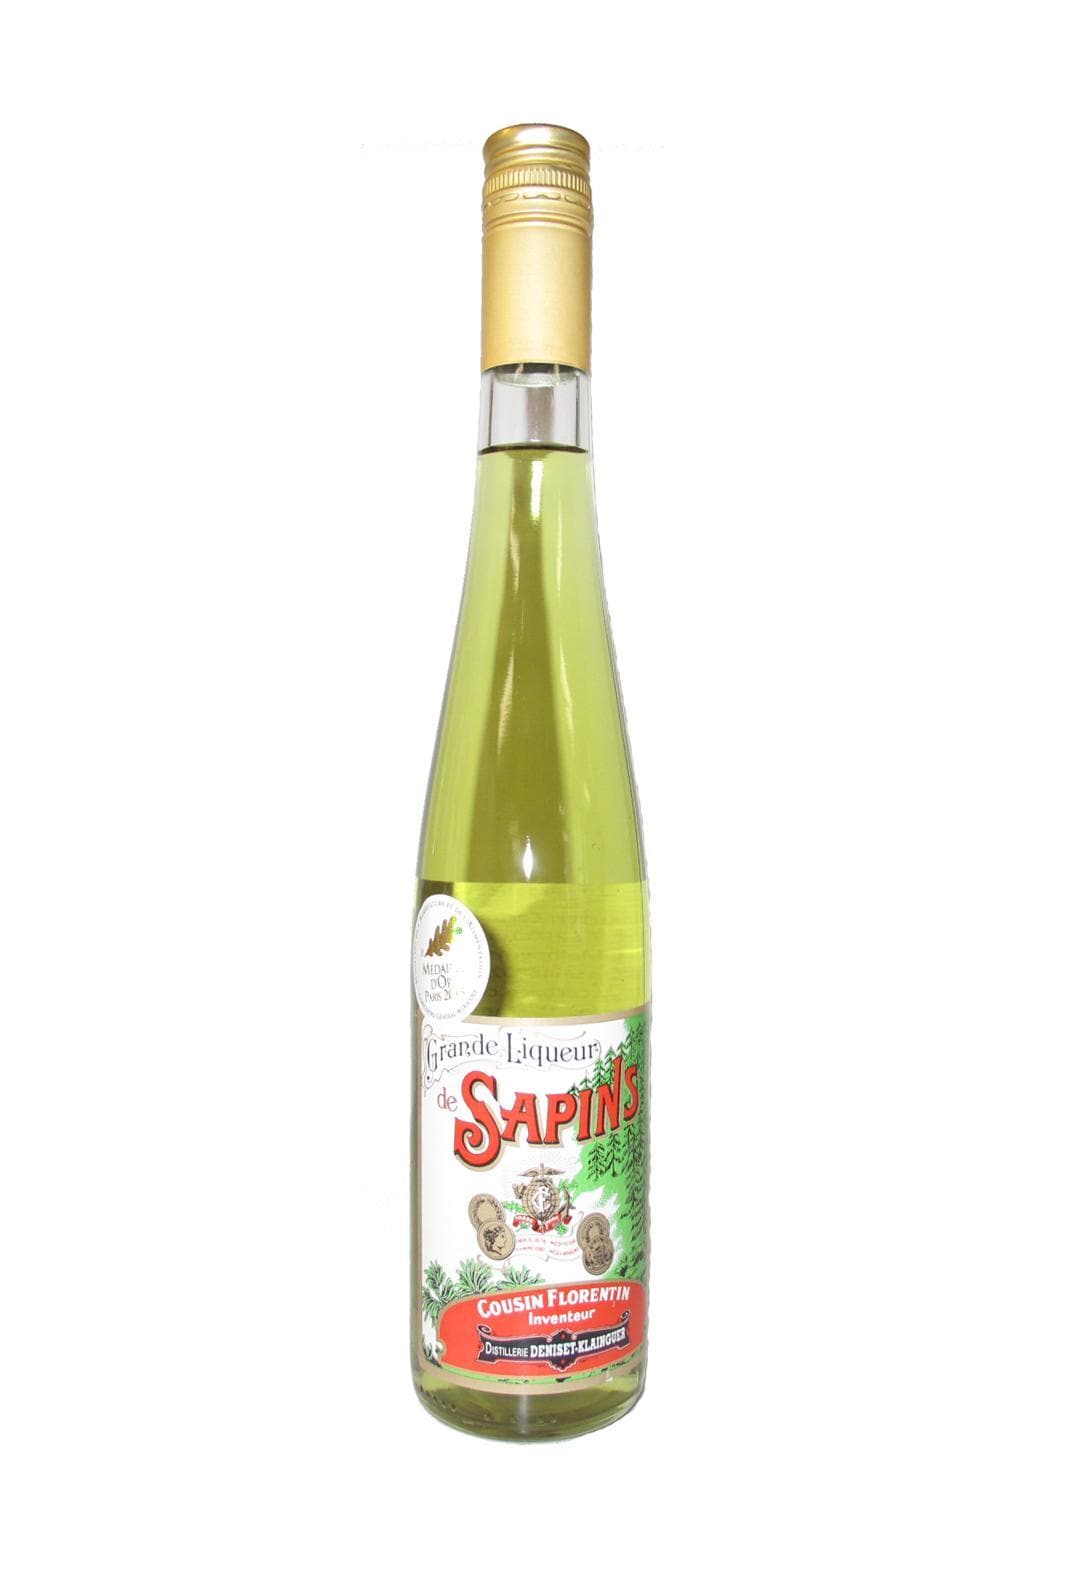 Distillerie Pernot Liqueur de Sapin (Fir tree buds maceration & mountain plants) 40% 500ml | Liqueurs | Shop online at Spirits of France